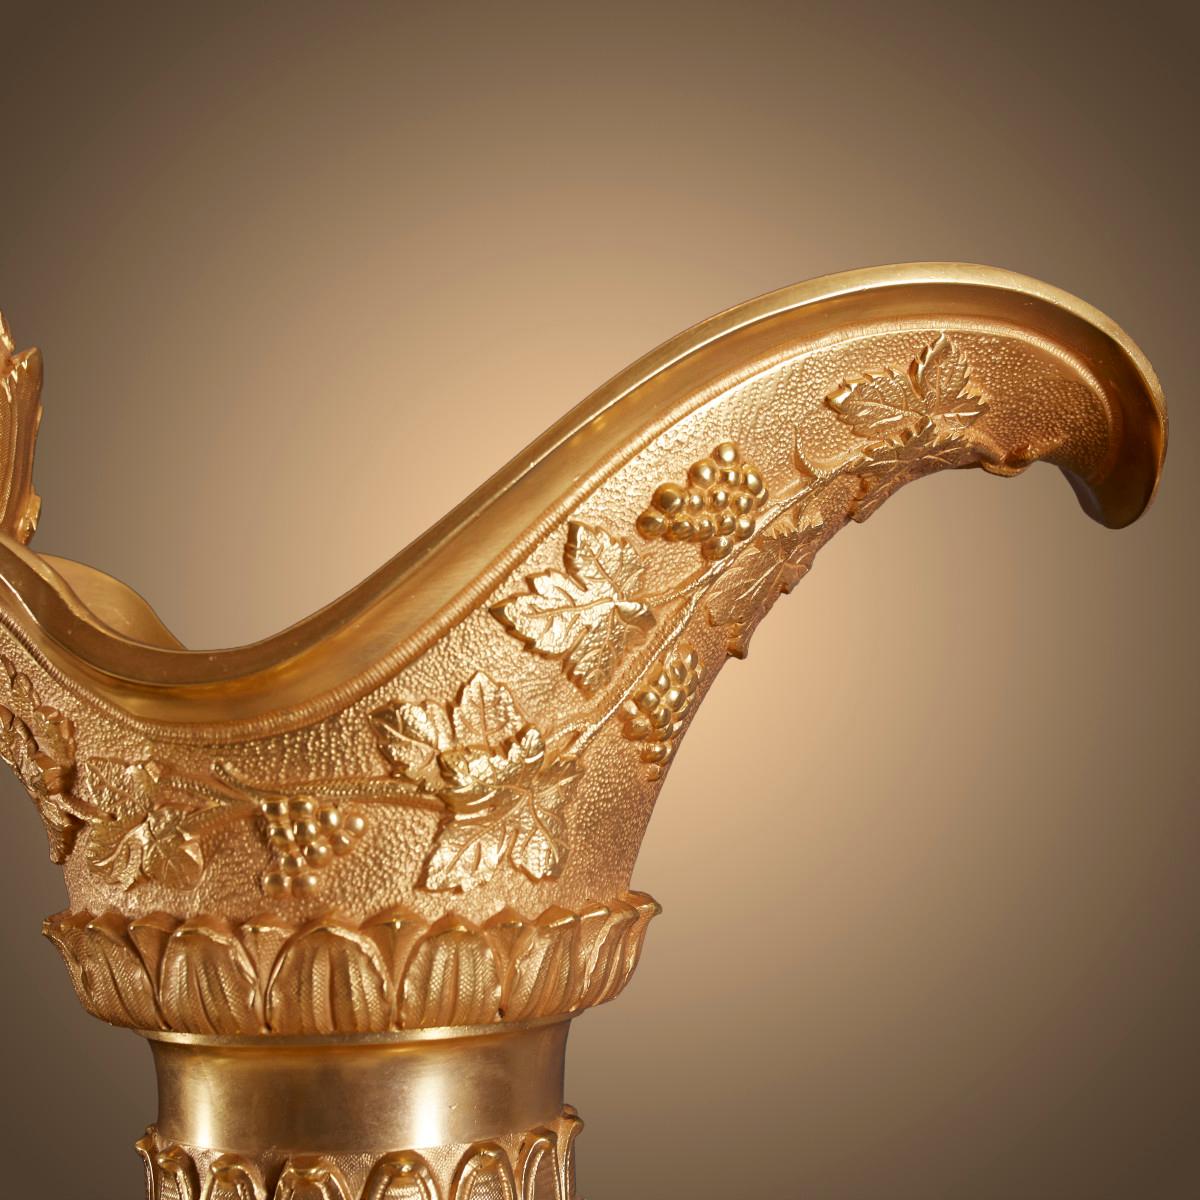 Gold Plate Pair of Vases 19th Century Century Louis XVI